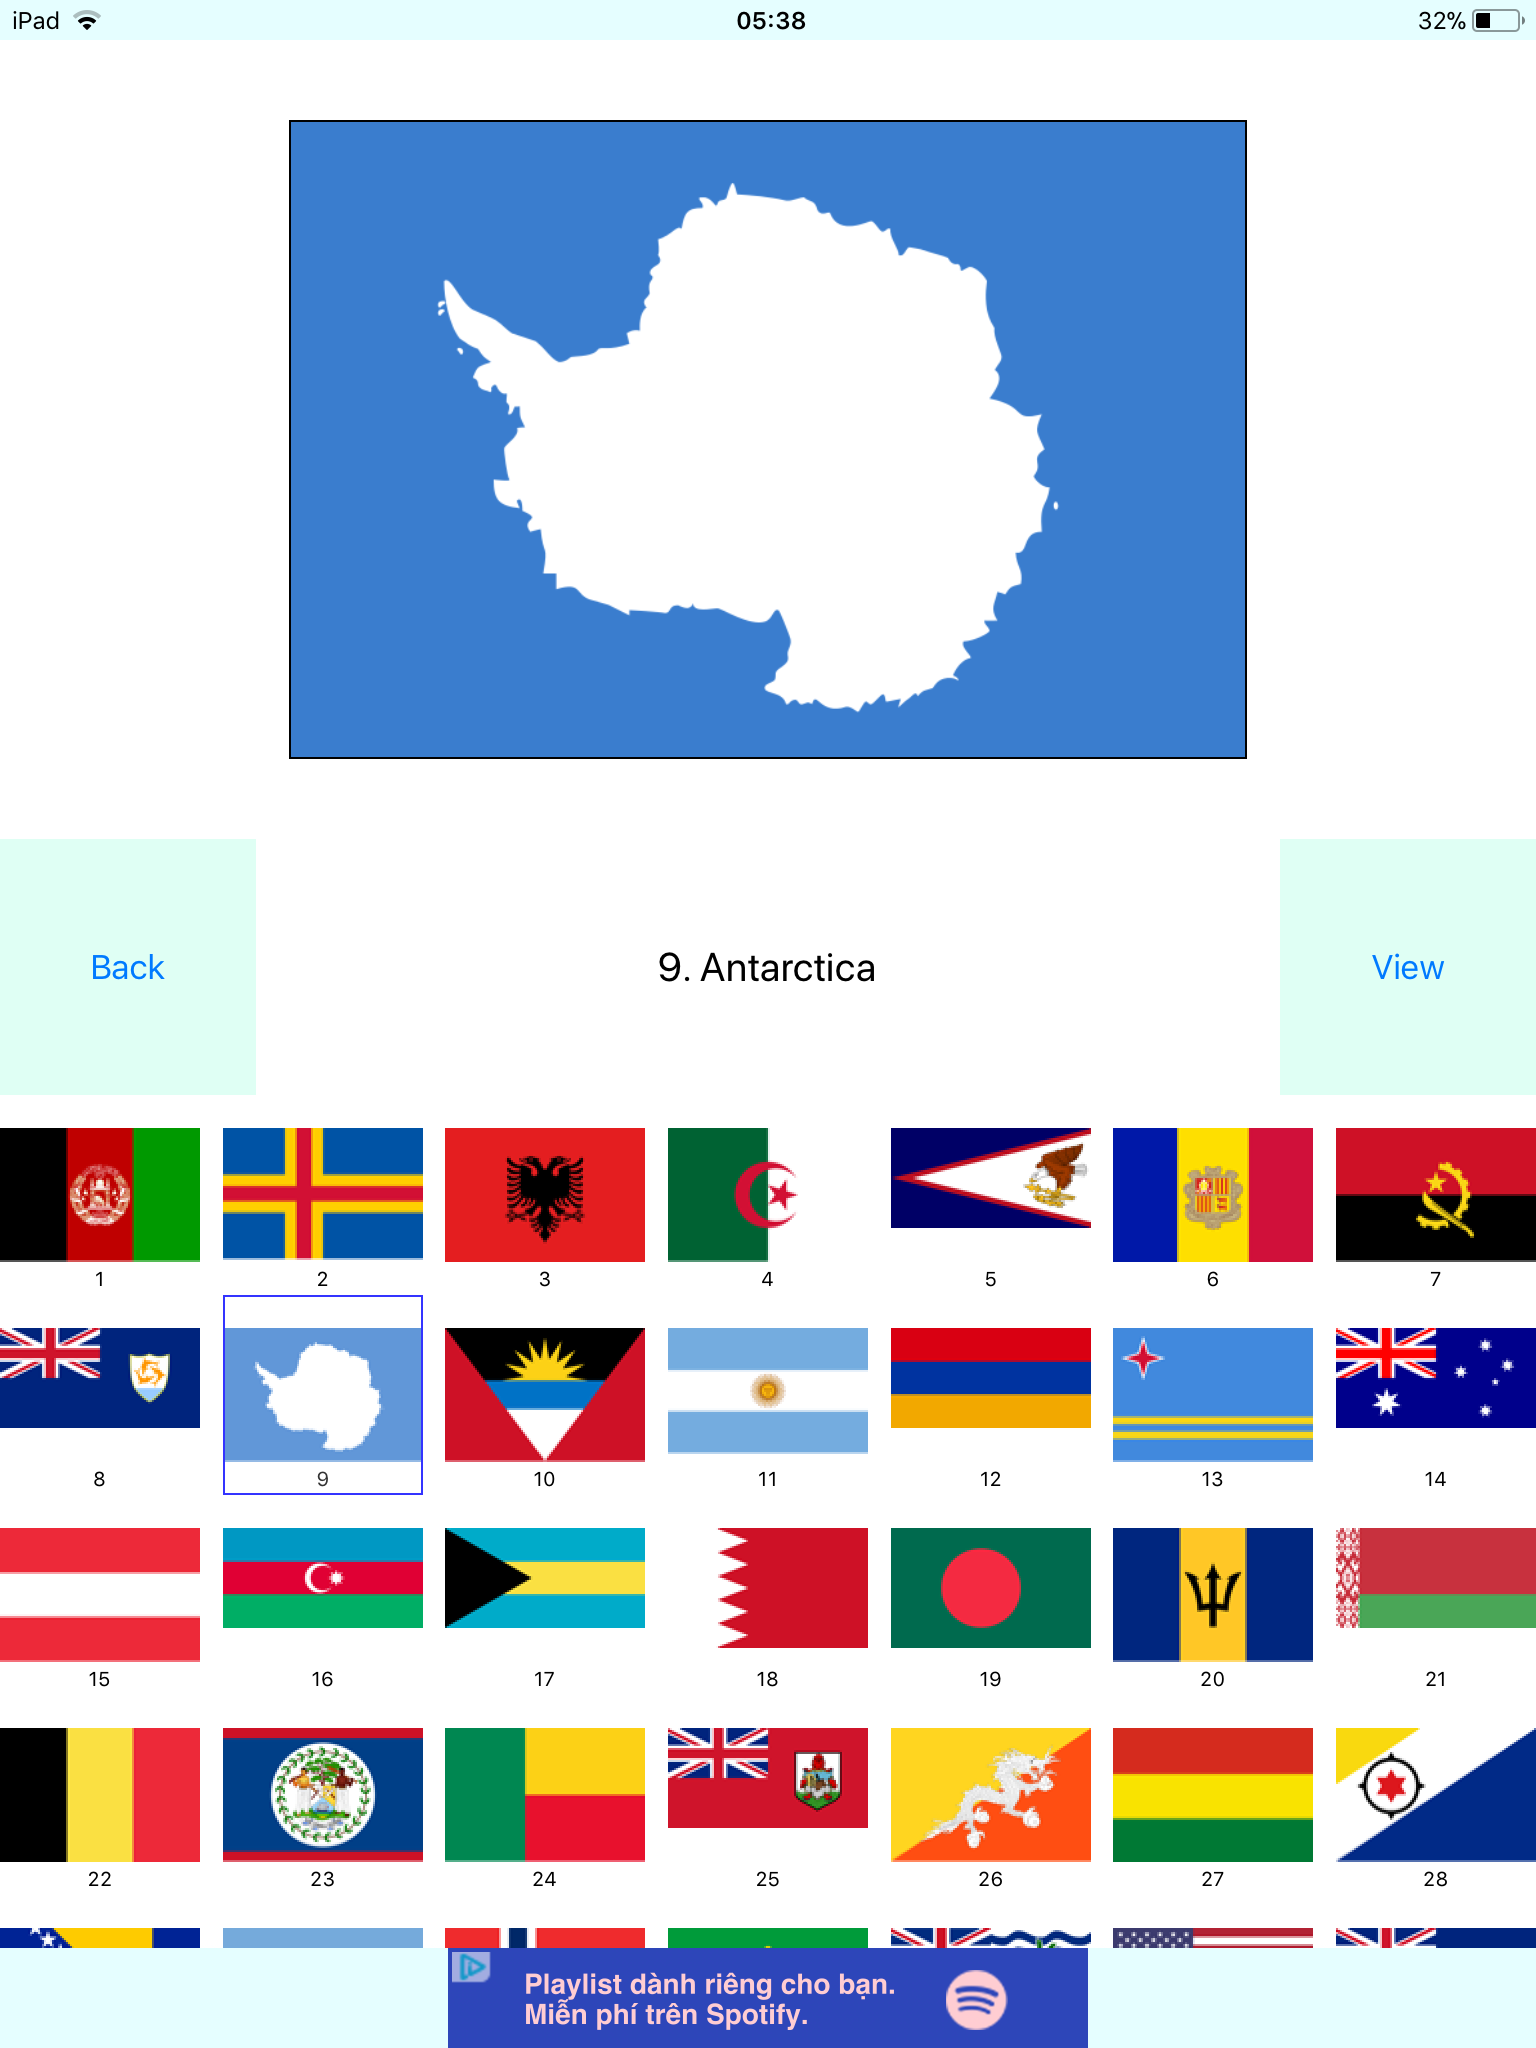 Ứng dụng học cờ các nước: Bạn muốn tìm hiểu về các quốc kỳ trên thế giới một cách dễ dàng và tiện lợi? Ứng dụng học cờ các nước sẽ giúp bạn làm được điều đó, chỉ với một vài thao tác đơn giản trên điện thoại của bạn. Hãy xem ảnh liên quan để khám phá ứng dụng thú vị này!